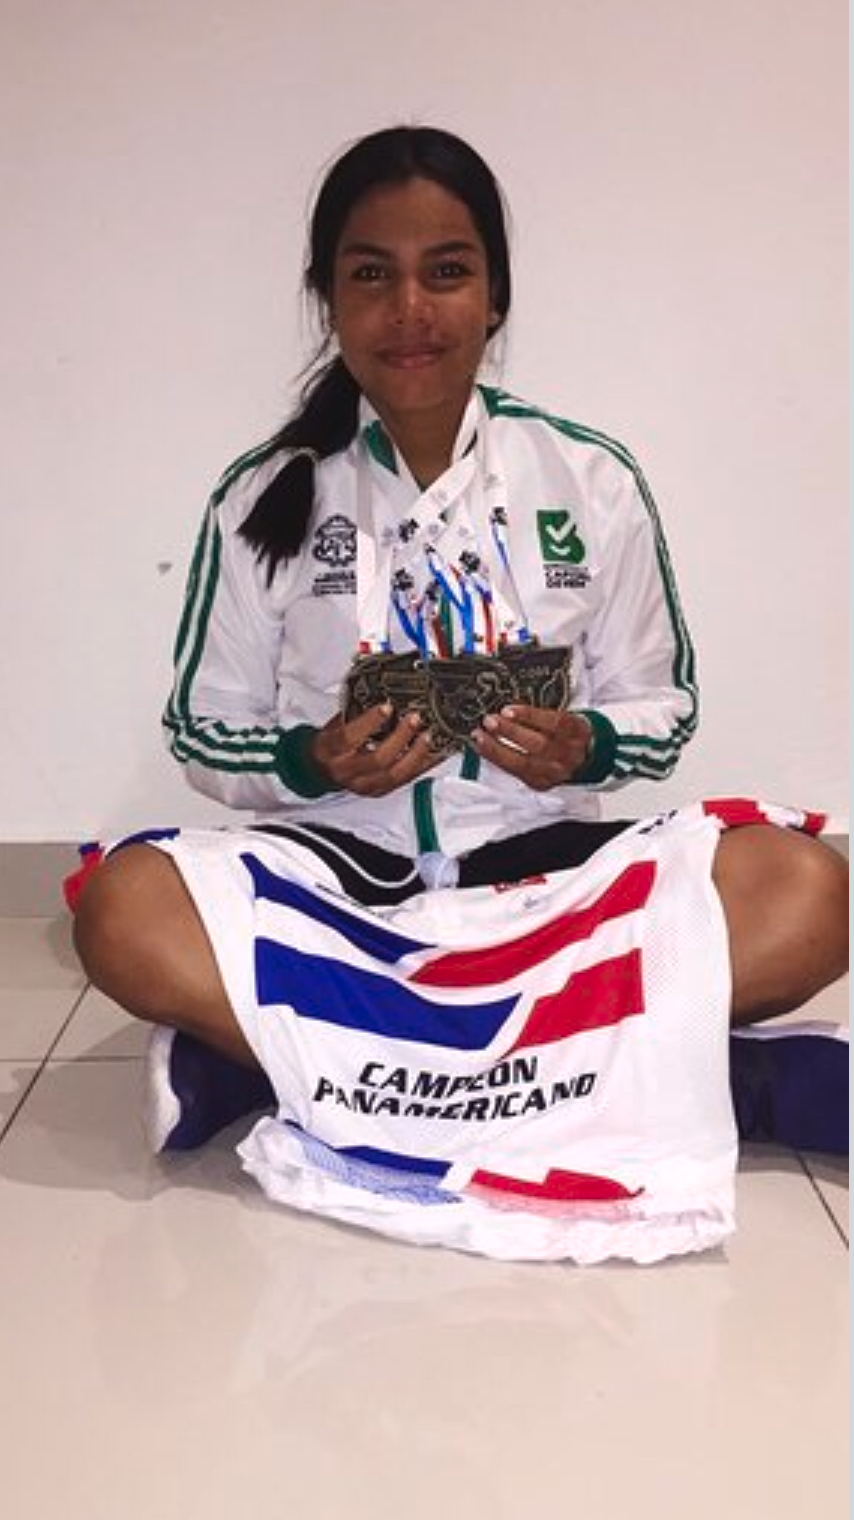 ¡Talento barranquillero!, integrante del Team conquista 4 títulos y récord panamericano en ciclismo de pista